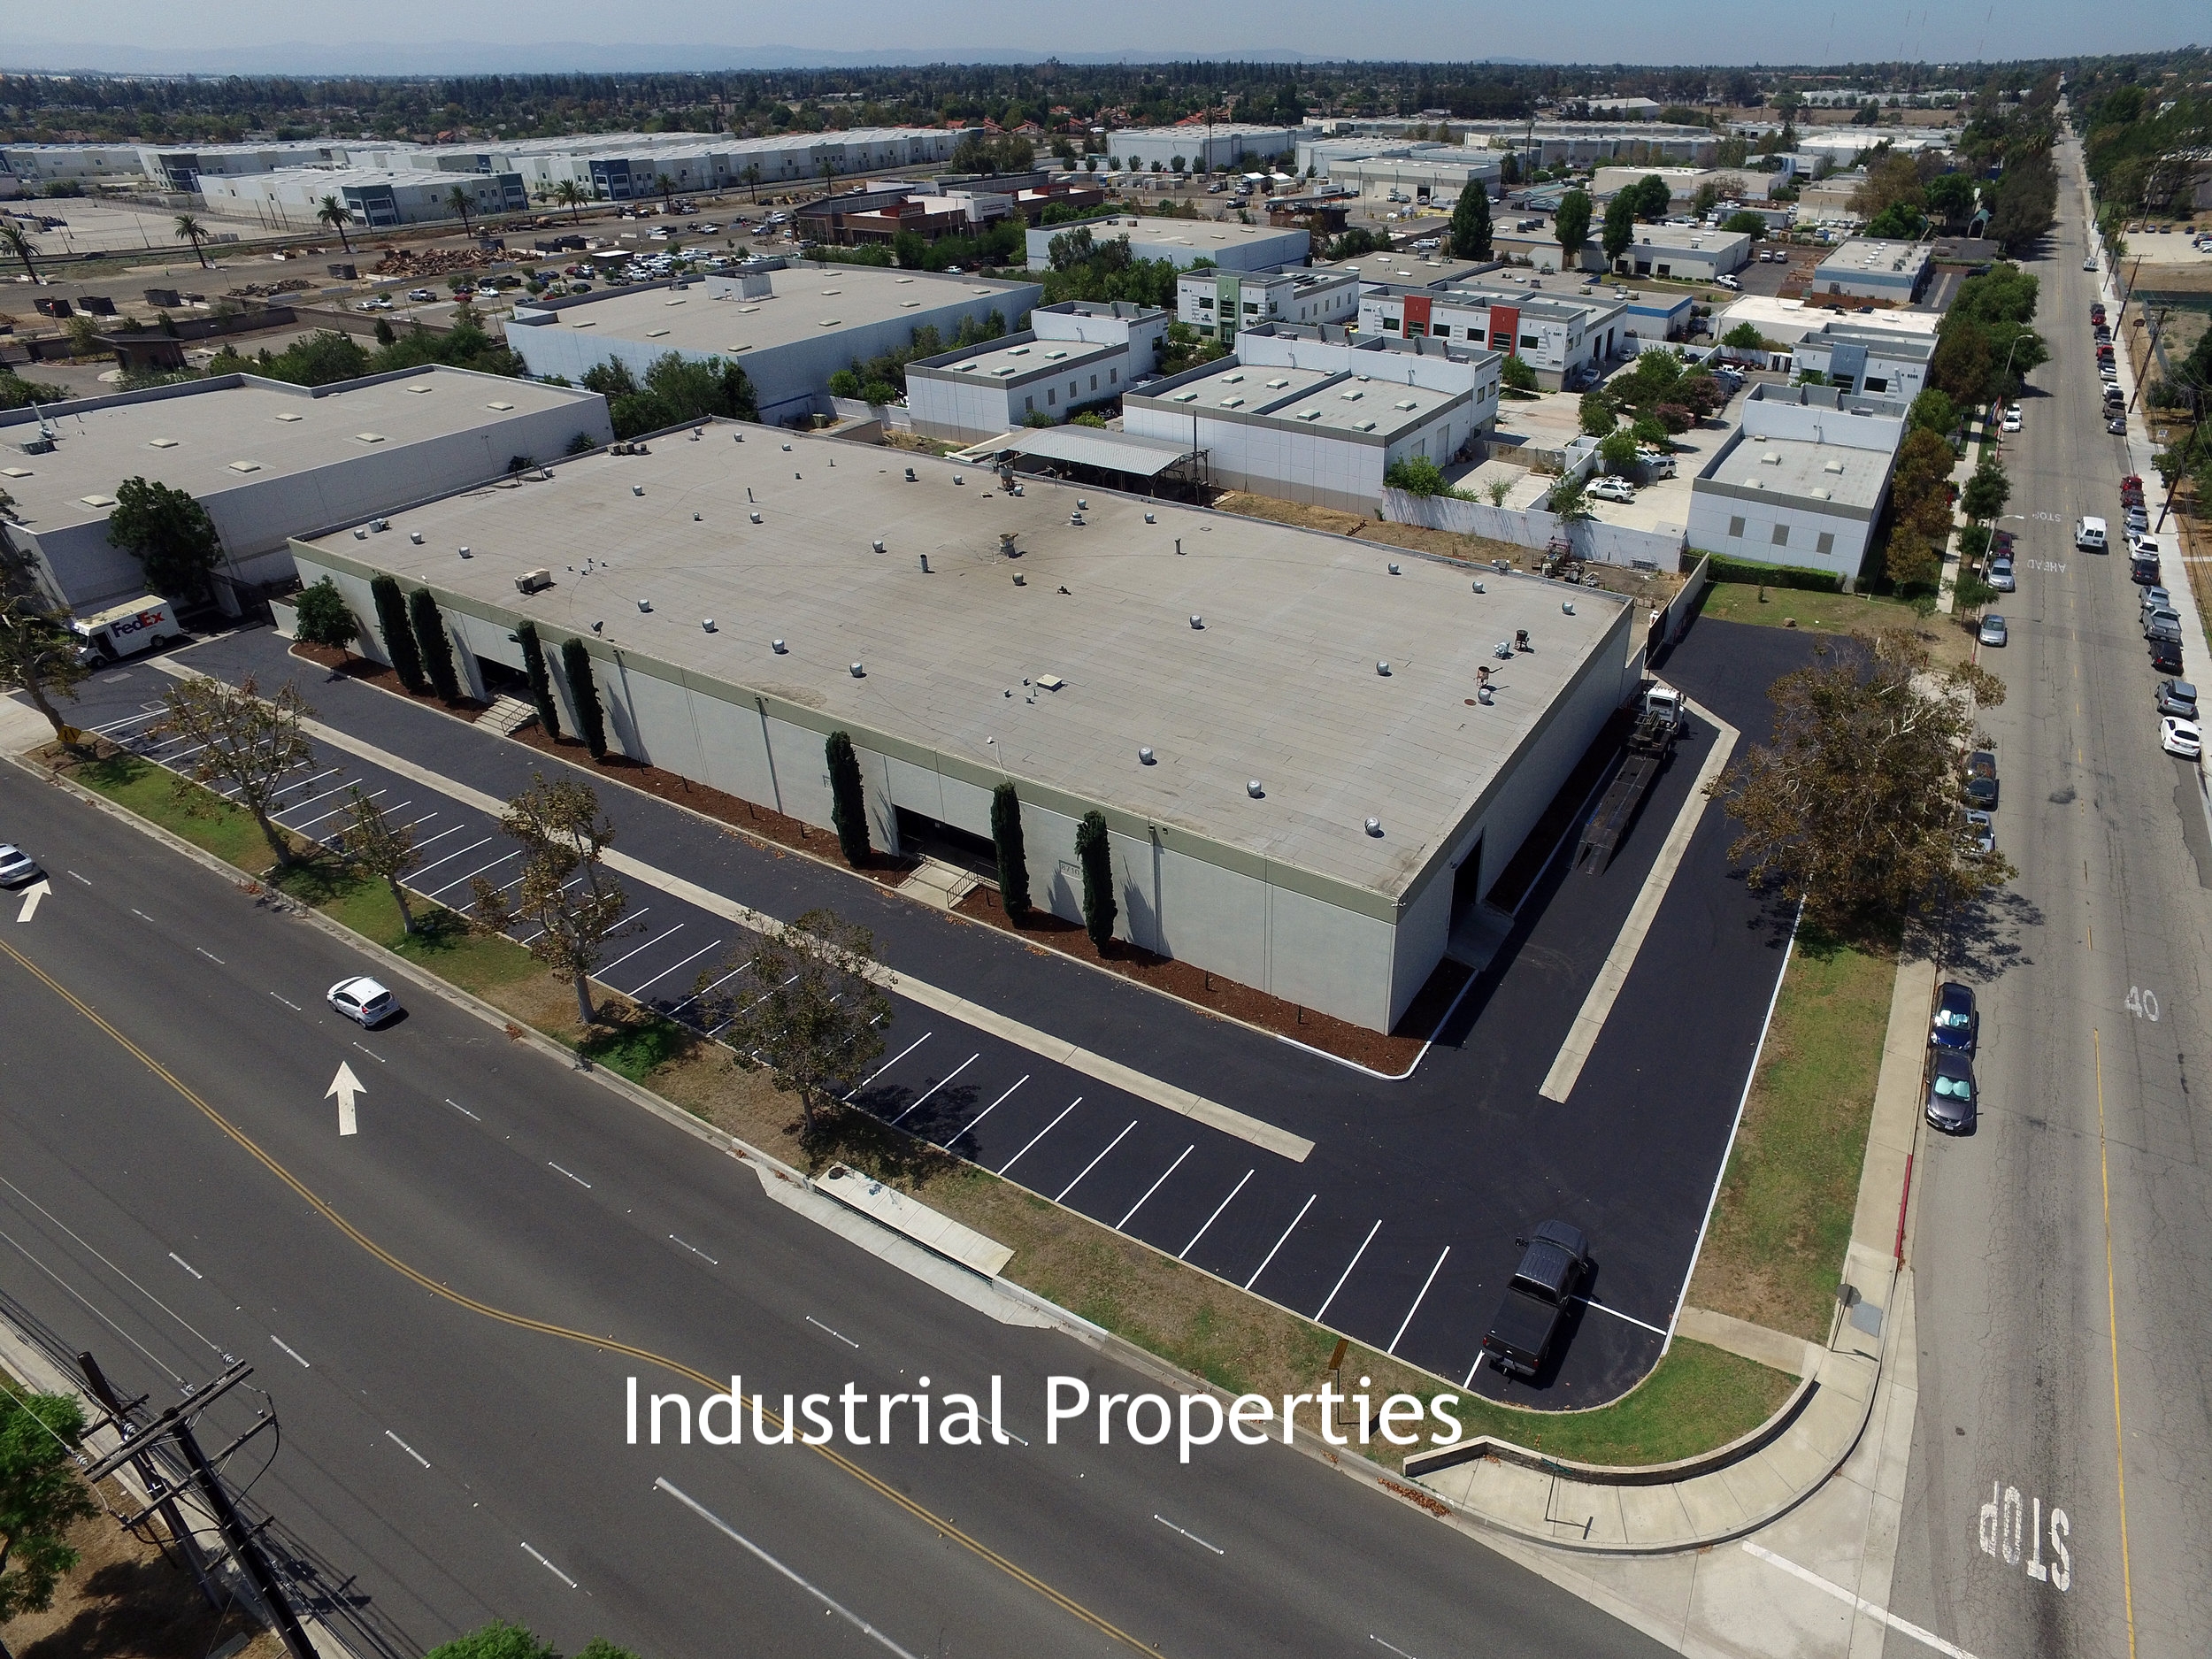 Industrial Properties